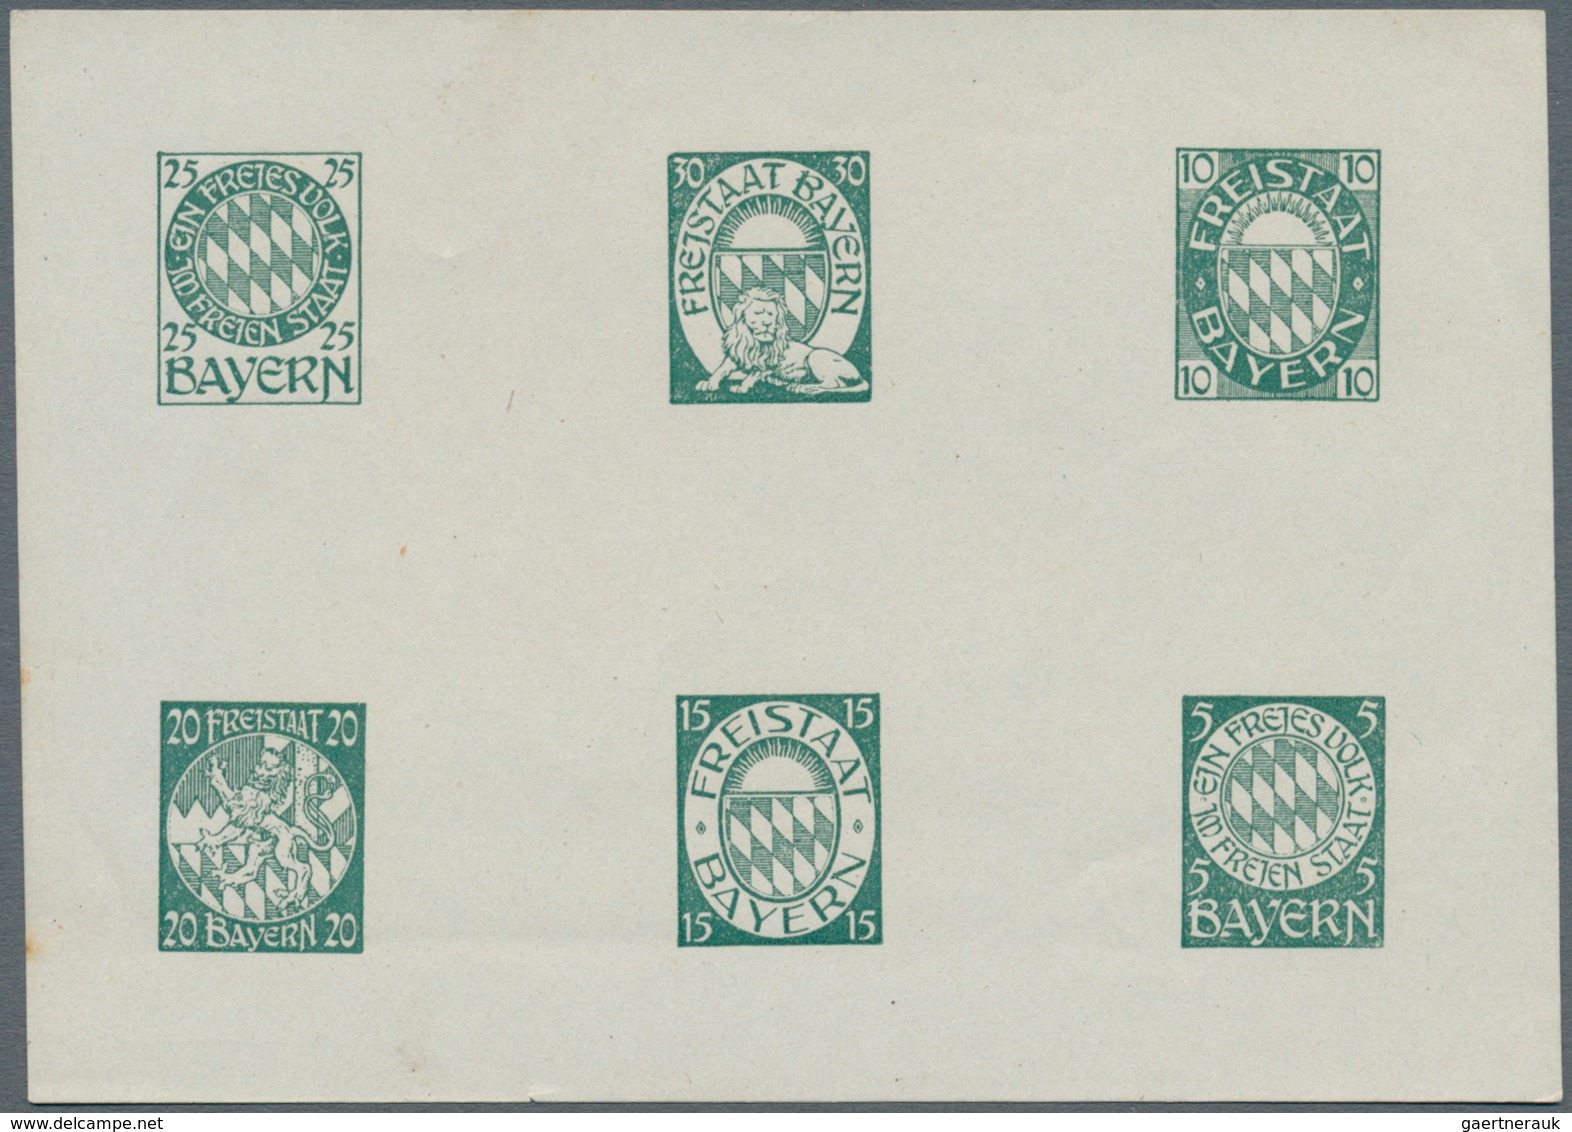 Bayern - Besonderheiten: 1910/1920, 6 Essay-Blöcke mit je 6 Marken in verschiedenen Farben, 1 Block